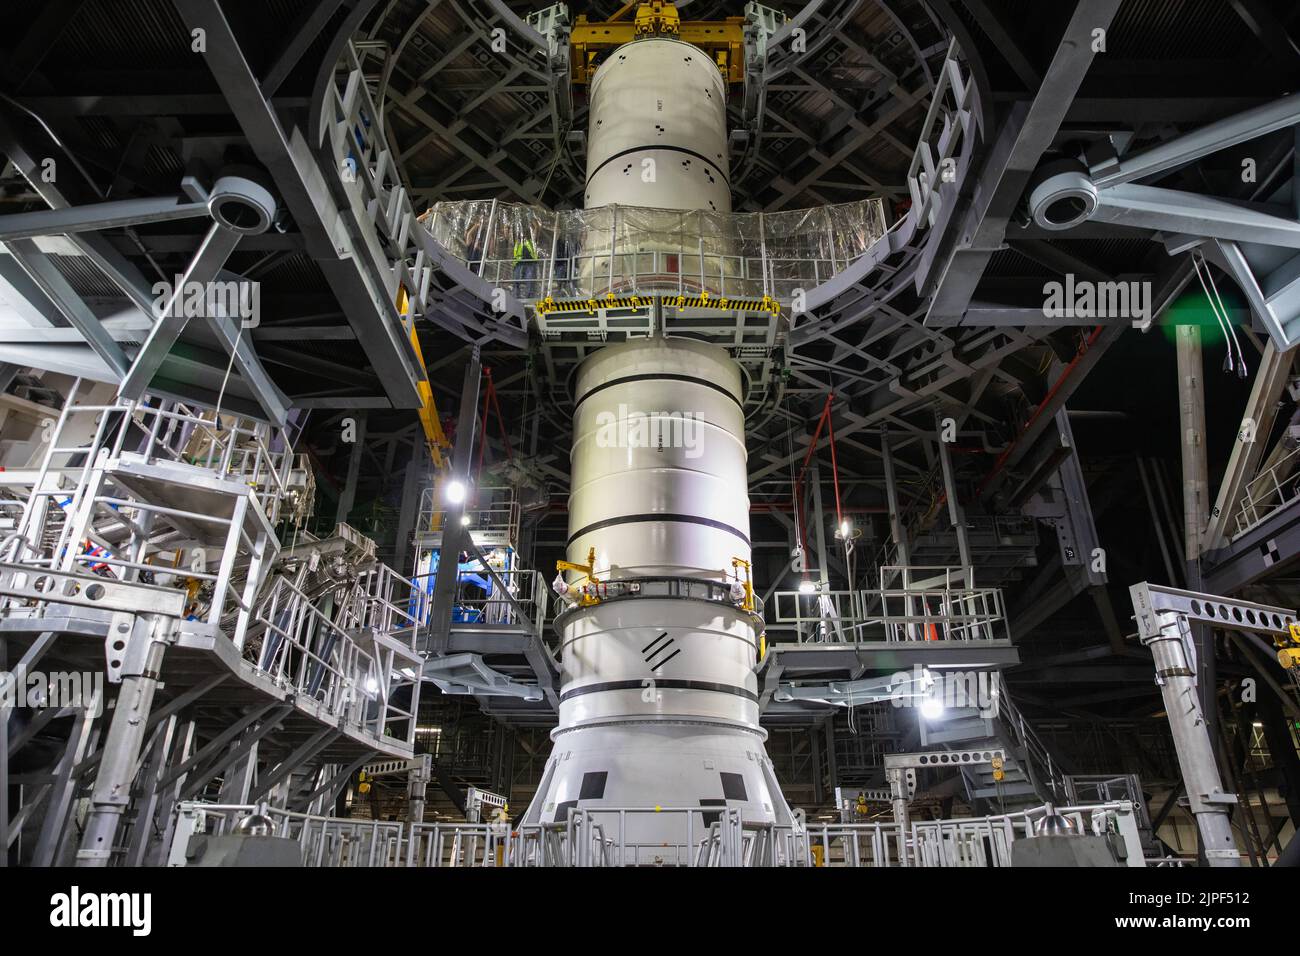 Centro Espacial Kennedy, Florida, EE.UU. 14th de Sep de 2020. Artemis I es la primera de una serie de misiones cada vez más complejas que permitirán la exploración humana a la Luna y Marte. El primer lanzamiento de SLS a Moon de 2022 con Be Unmanned. En 2024 la NASA planea enviar a la primera mujer a la luna.Los técnicos de los Sistemas de Exploración Terrestre de la NASA bajan un simulacro, O pathfinder, del segmento de refuerzo central del Sistema de Lanzamiento Espacial (SLS) en un segmento de pathfinder de popa dentro del Edificio de Ensamblaje de Vehículos (VAB) en el Centro Espacial Kennedy de la agencia en Florida el 14 de septiembre de 2020. Los equipos ensayaron el bot de apilamiento Foto de stock